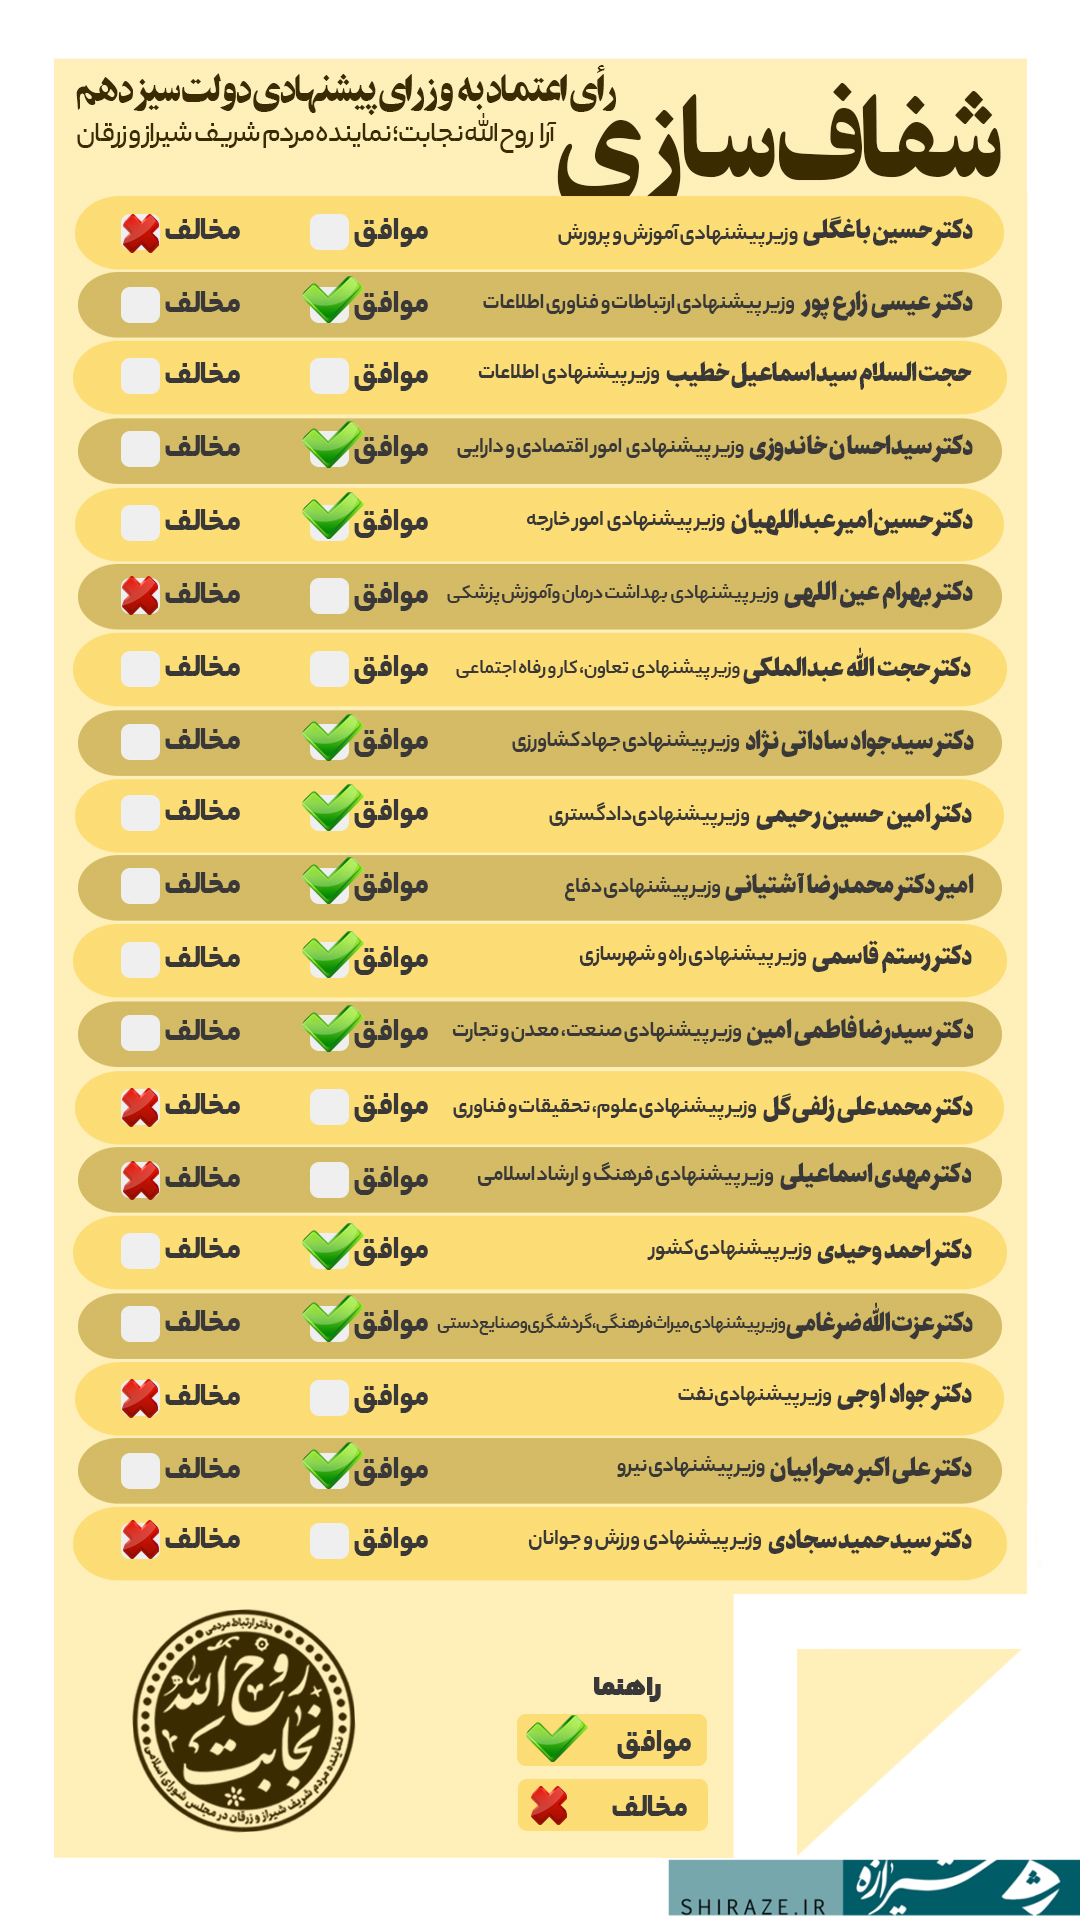 نمایندگان مردم استان فارس به کدام وزیر کابینه رای اعتماد دادند؟